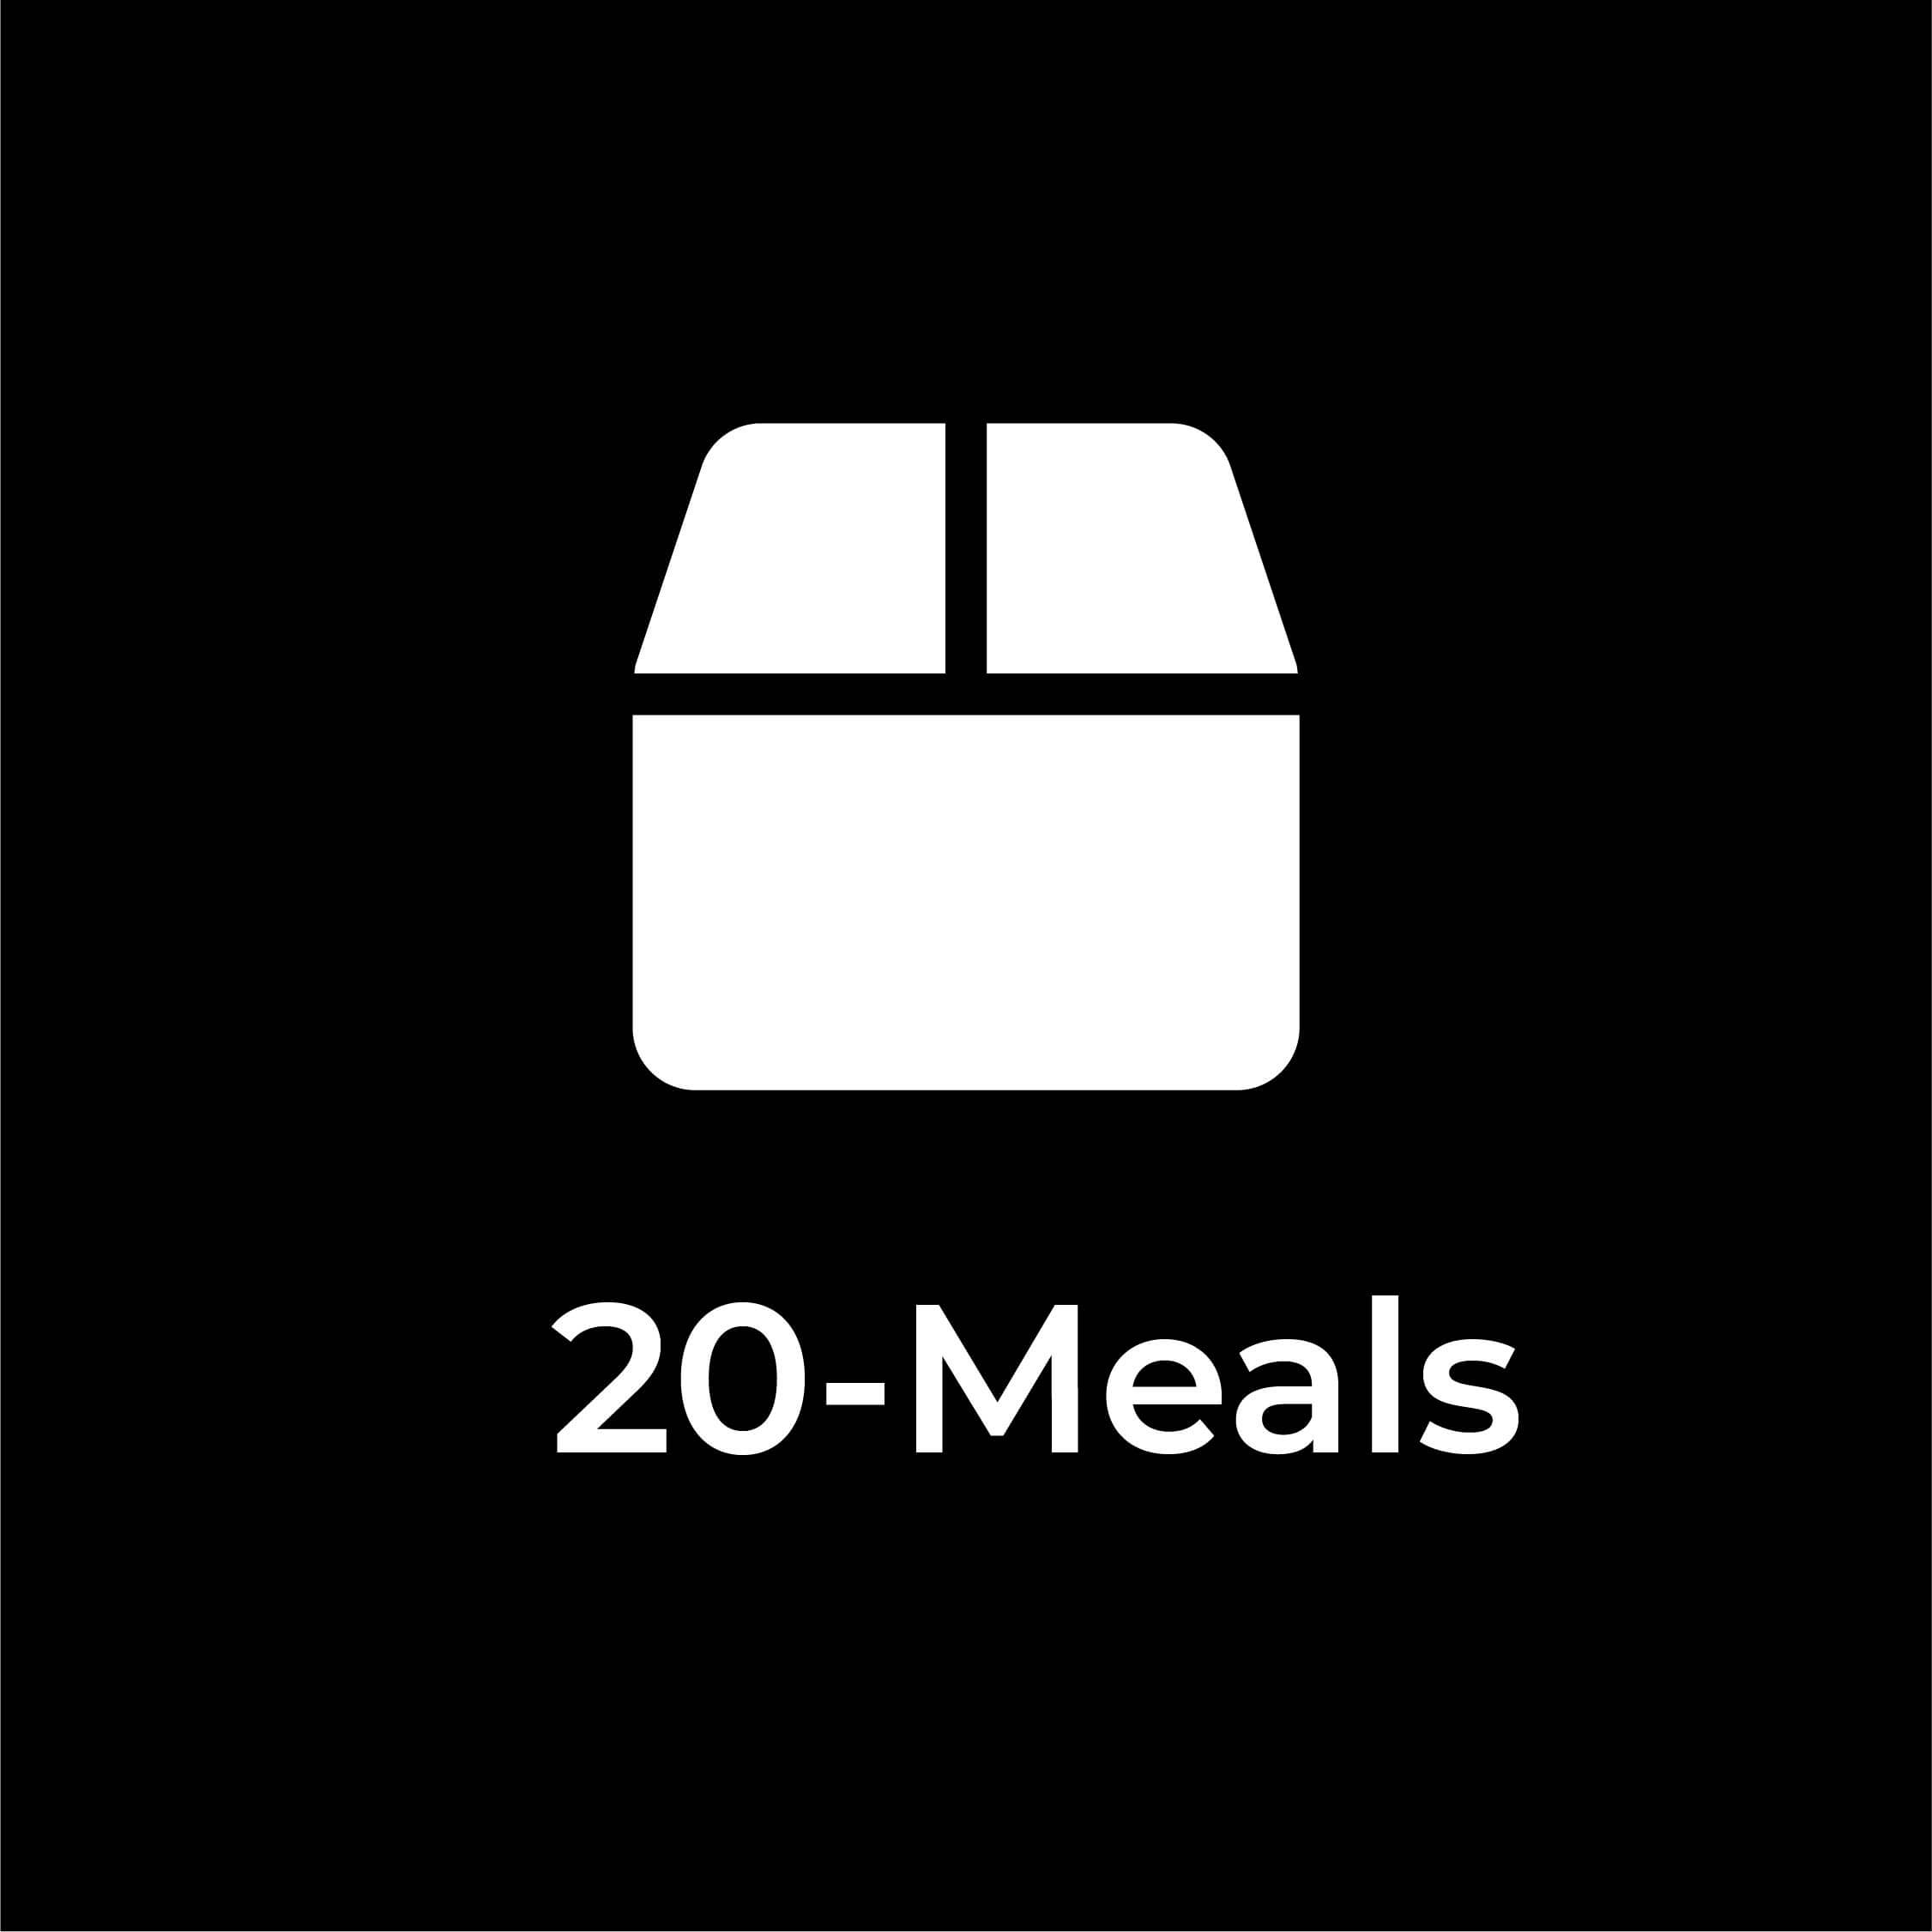 20-Meals